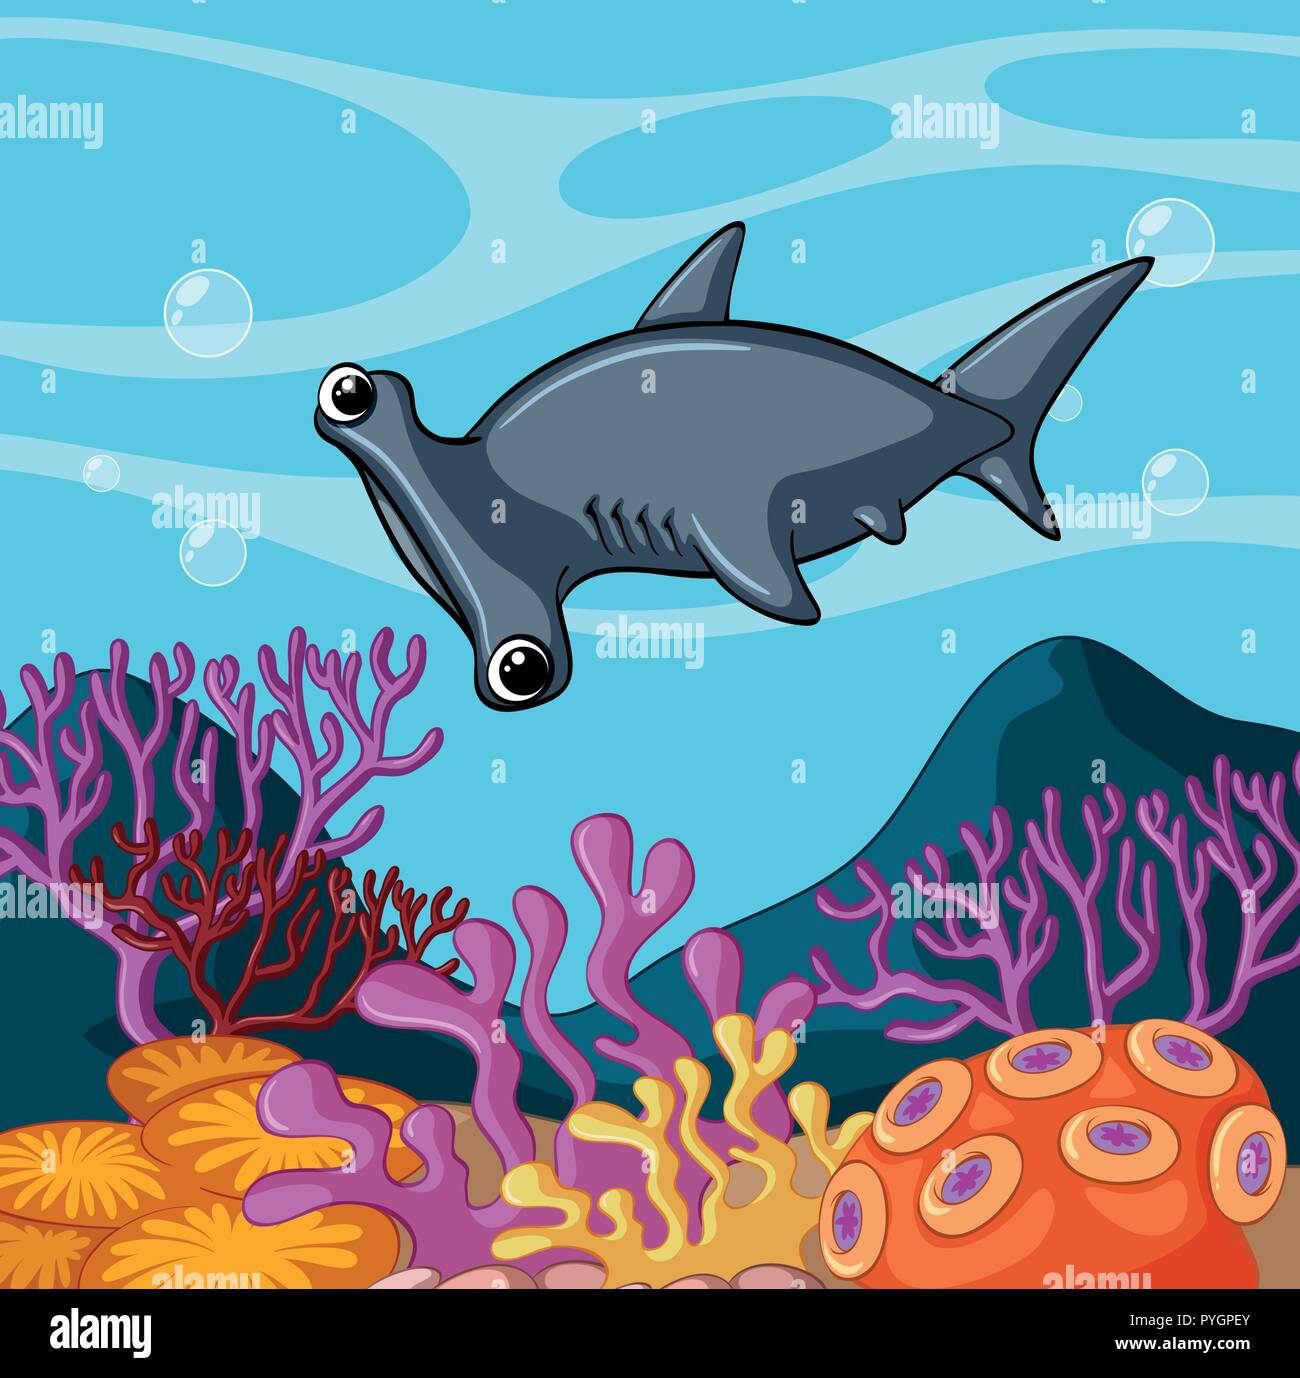 Hammerhead shark swimming under the ocean illustration Stock Vector